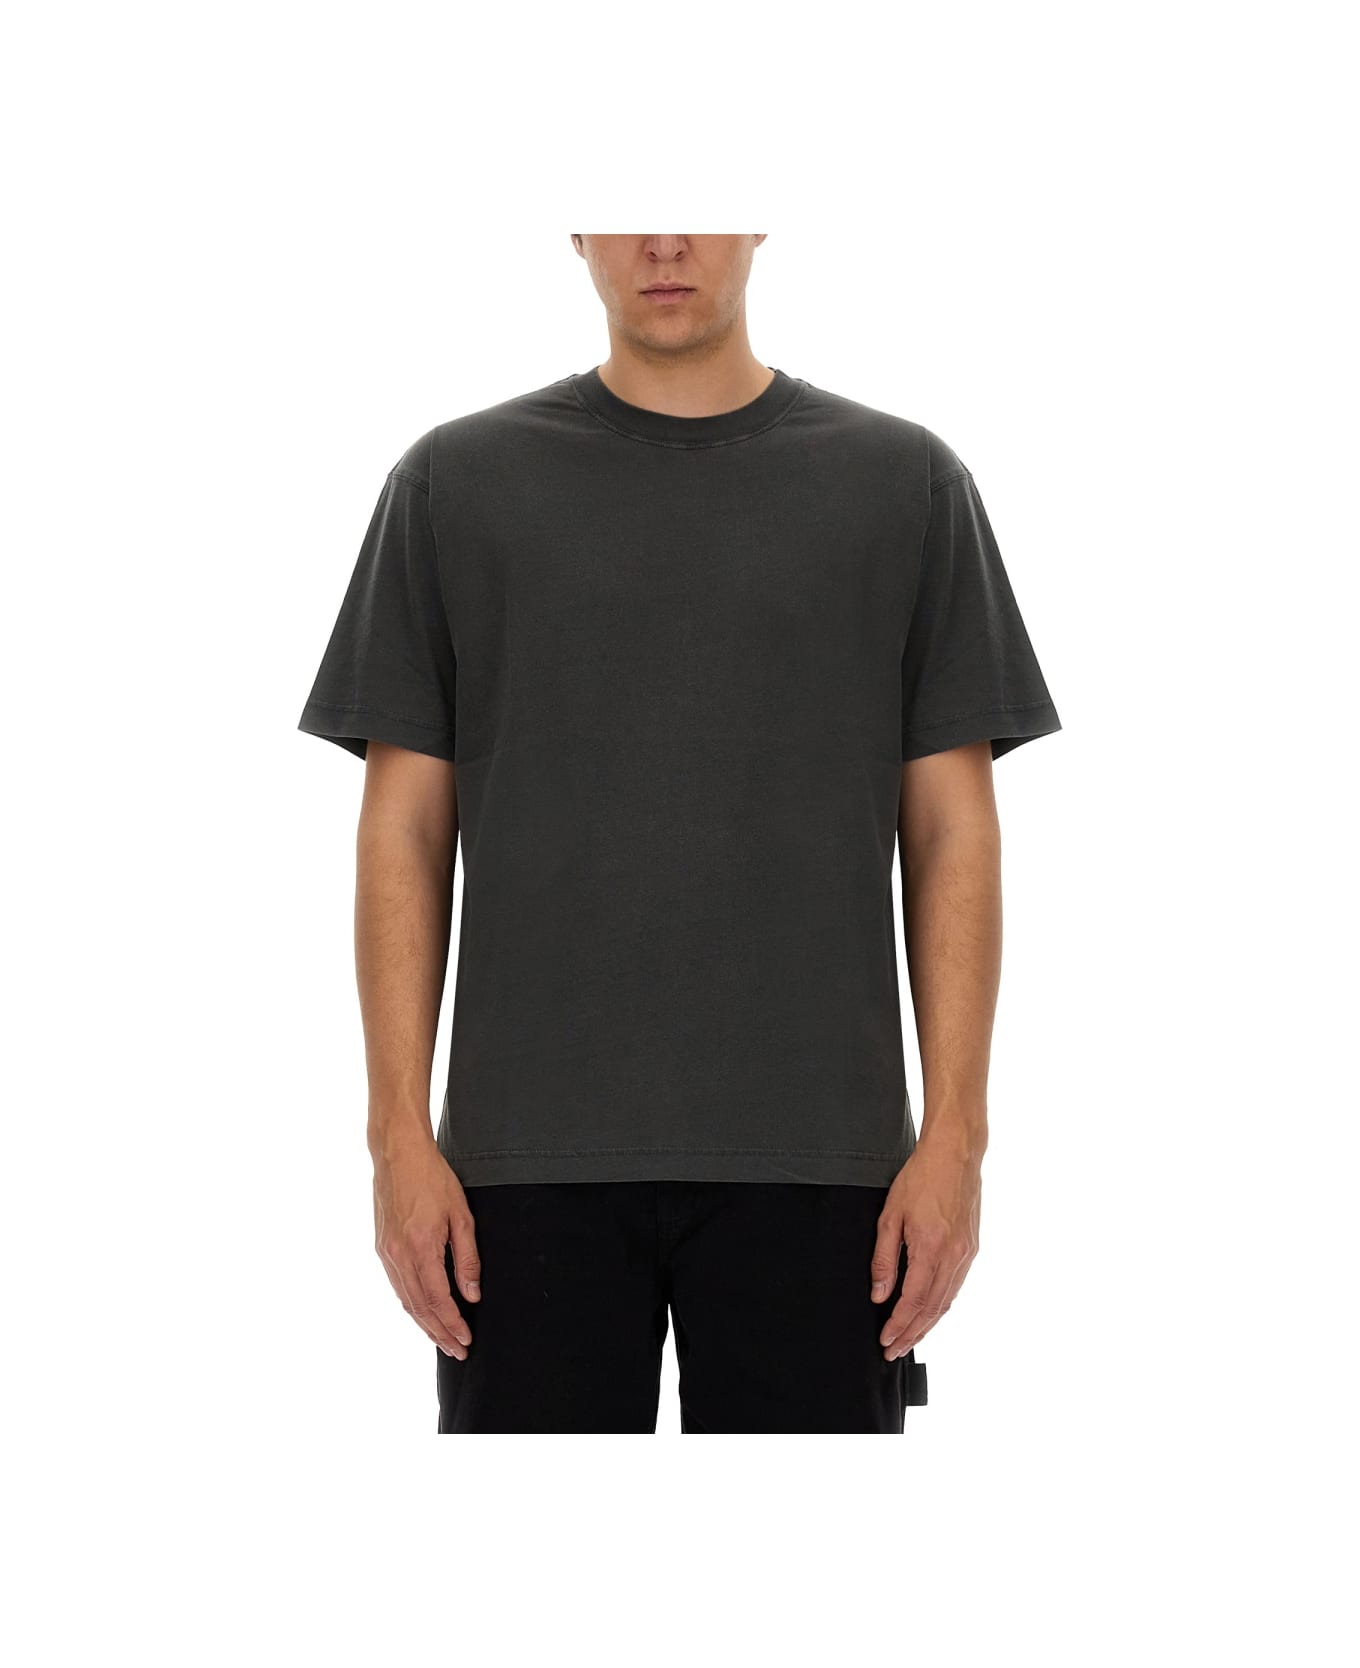 Carhartt Cotton T-shirt - GREY